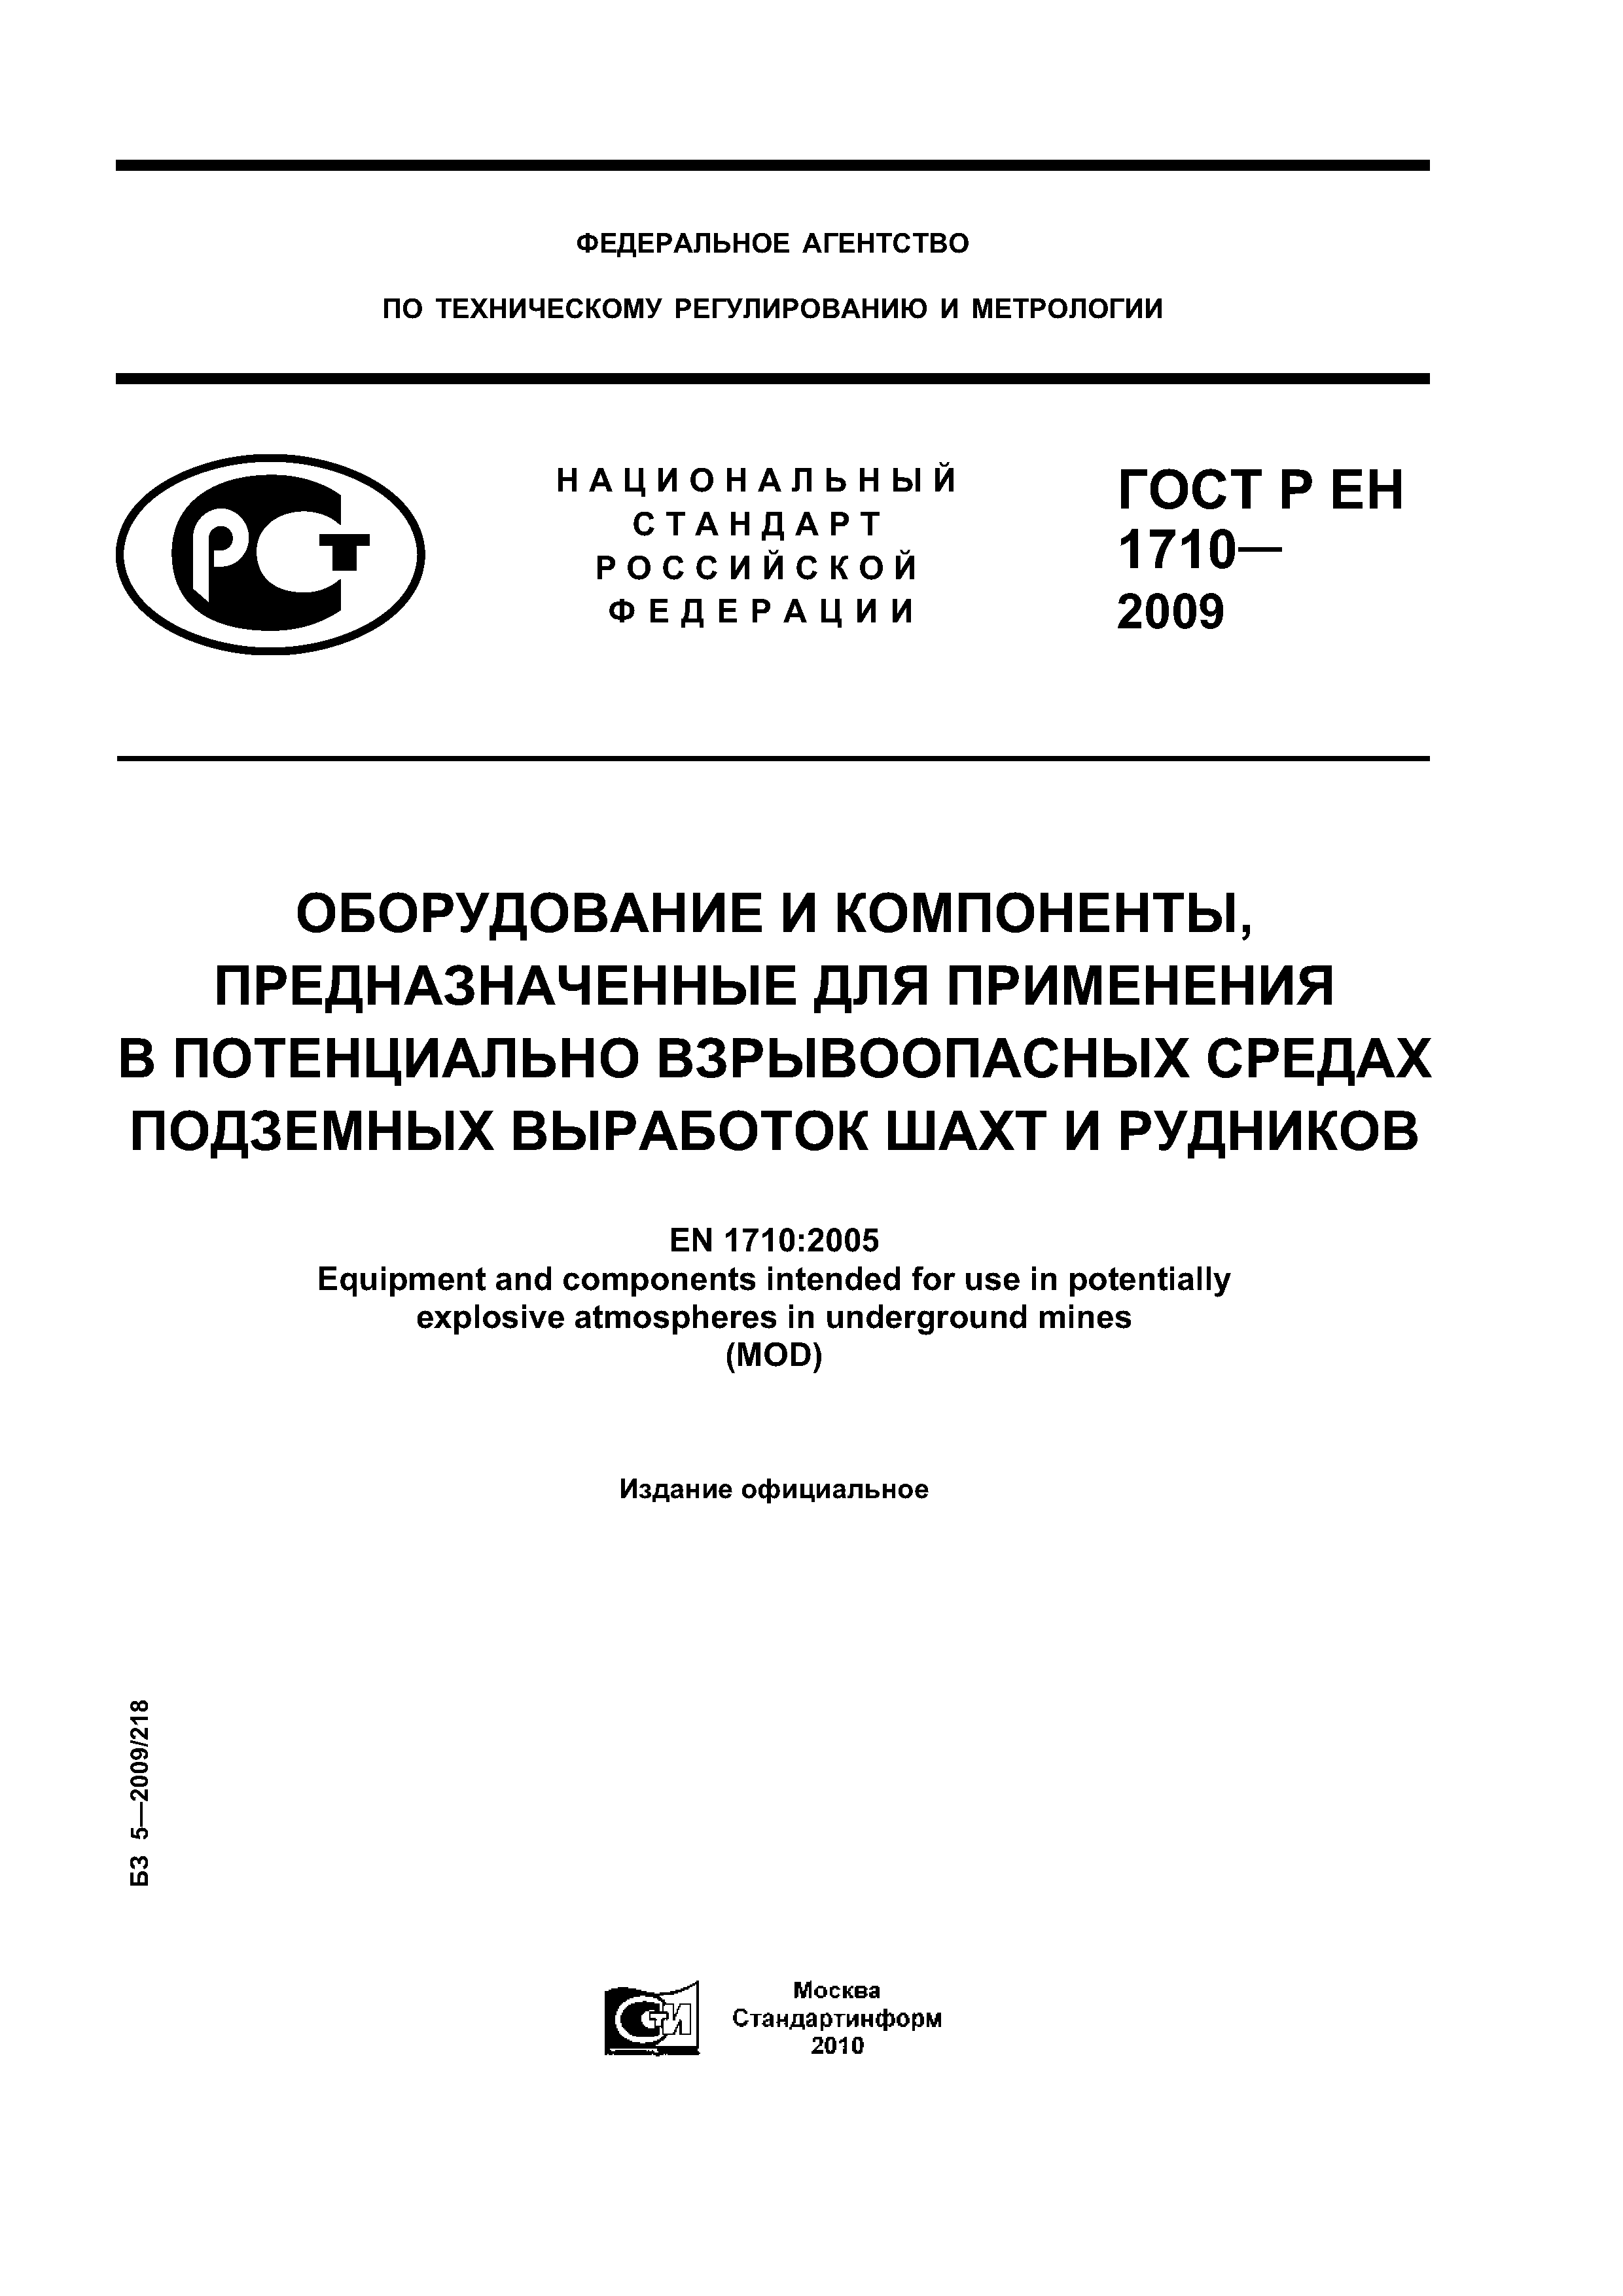 ГОСТ Р ЕН 1710-2009